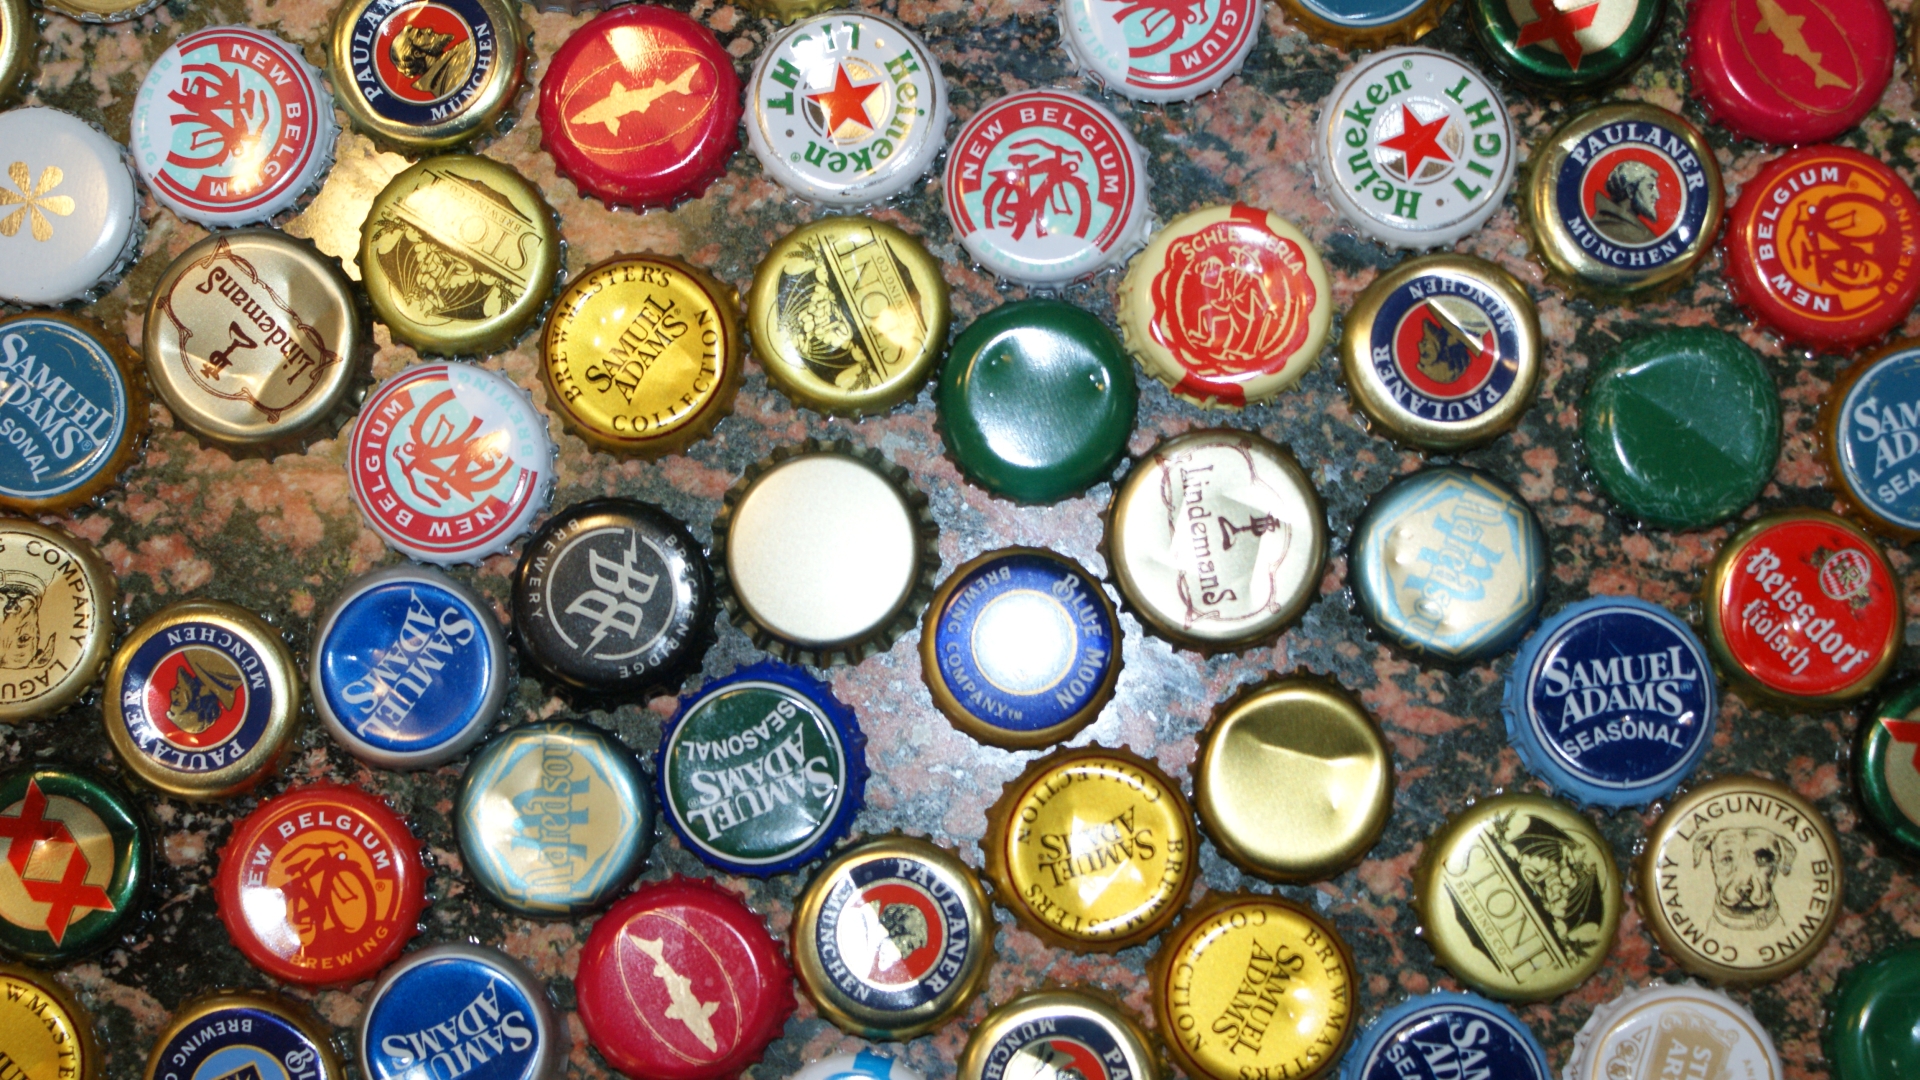 misc, beer bottle caps